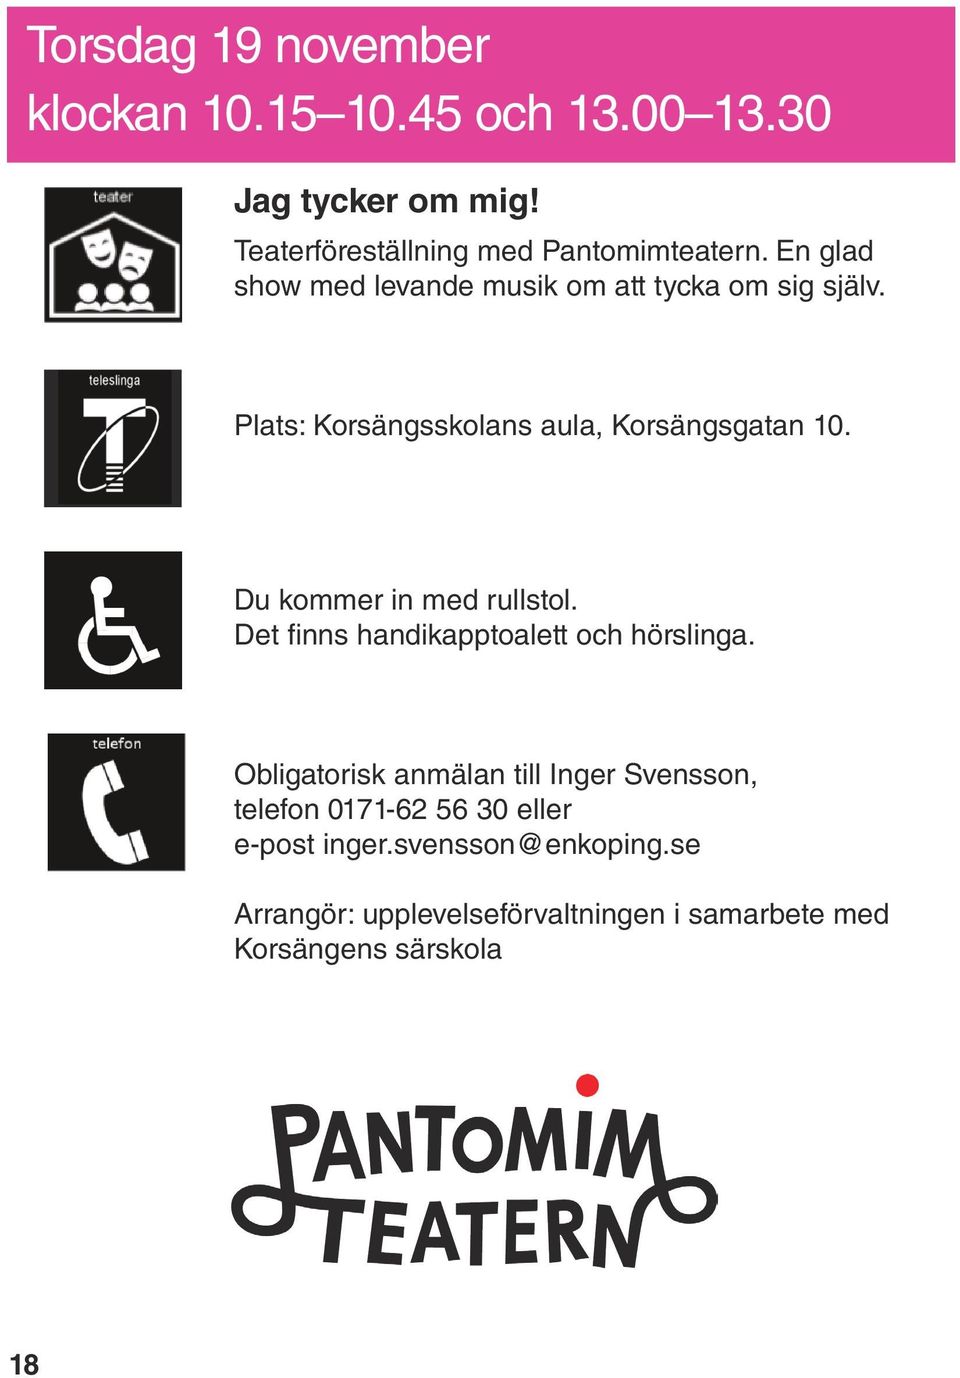 Plats: Korsängsskolans aula, Korsängsgatan 10. Det finns handikapptoalett och hörslinga.